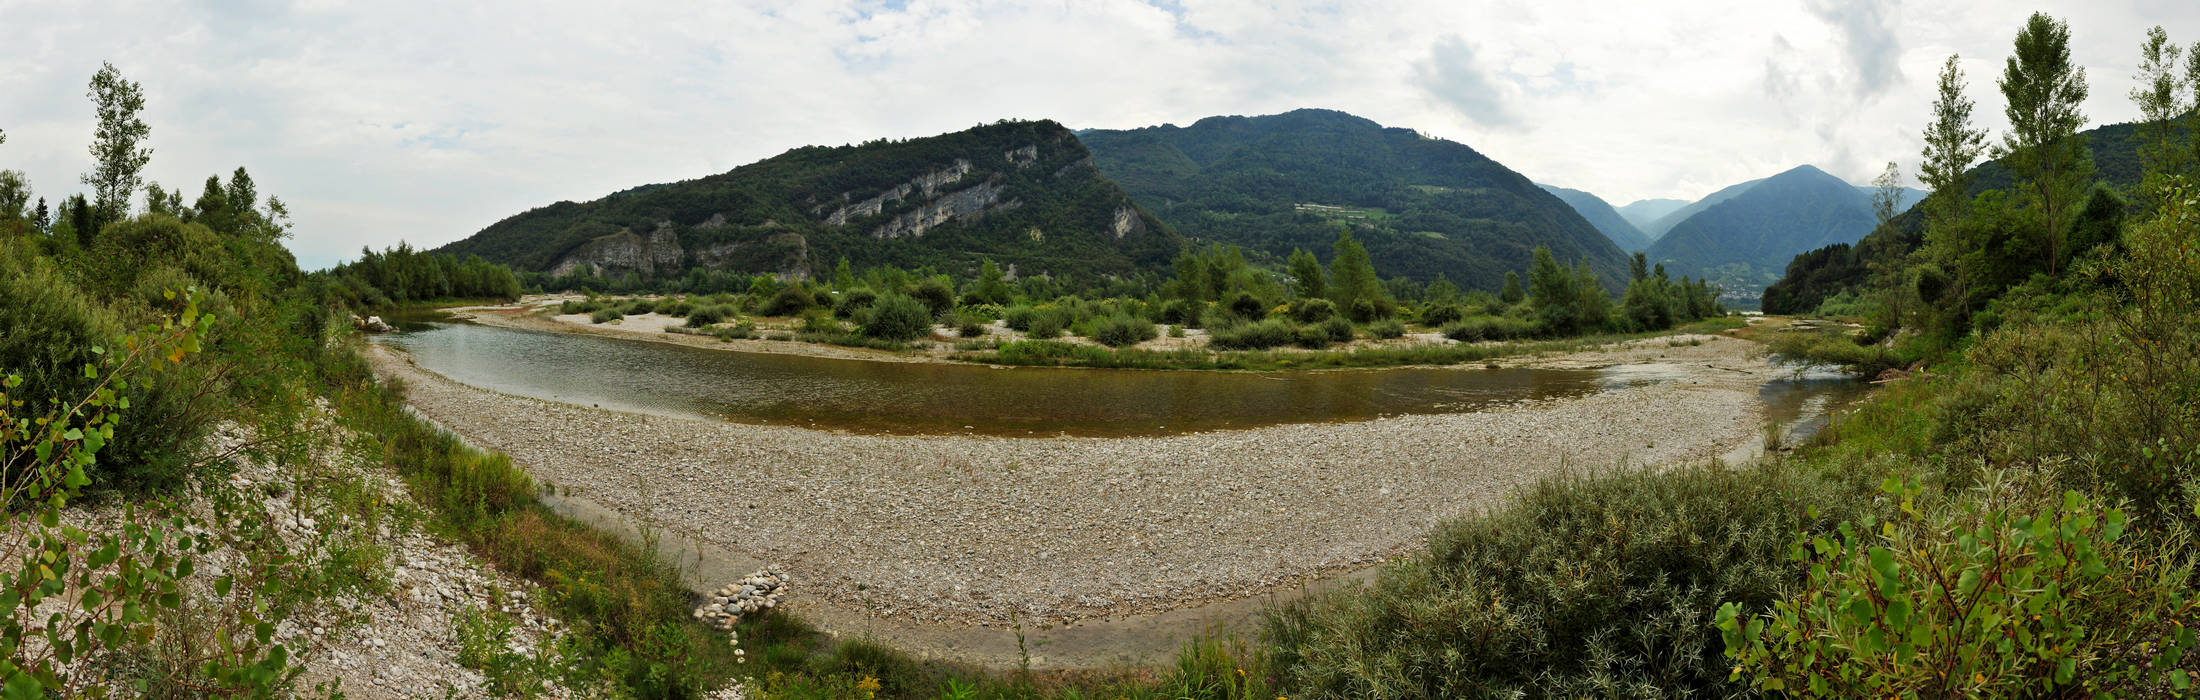 Vincheto di Celarda, Feltre fiume Piave